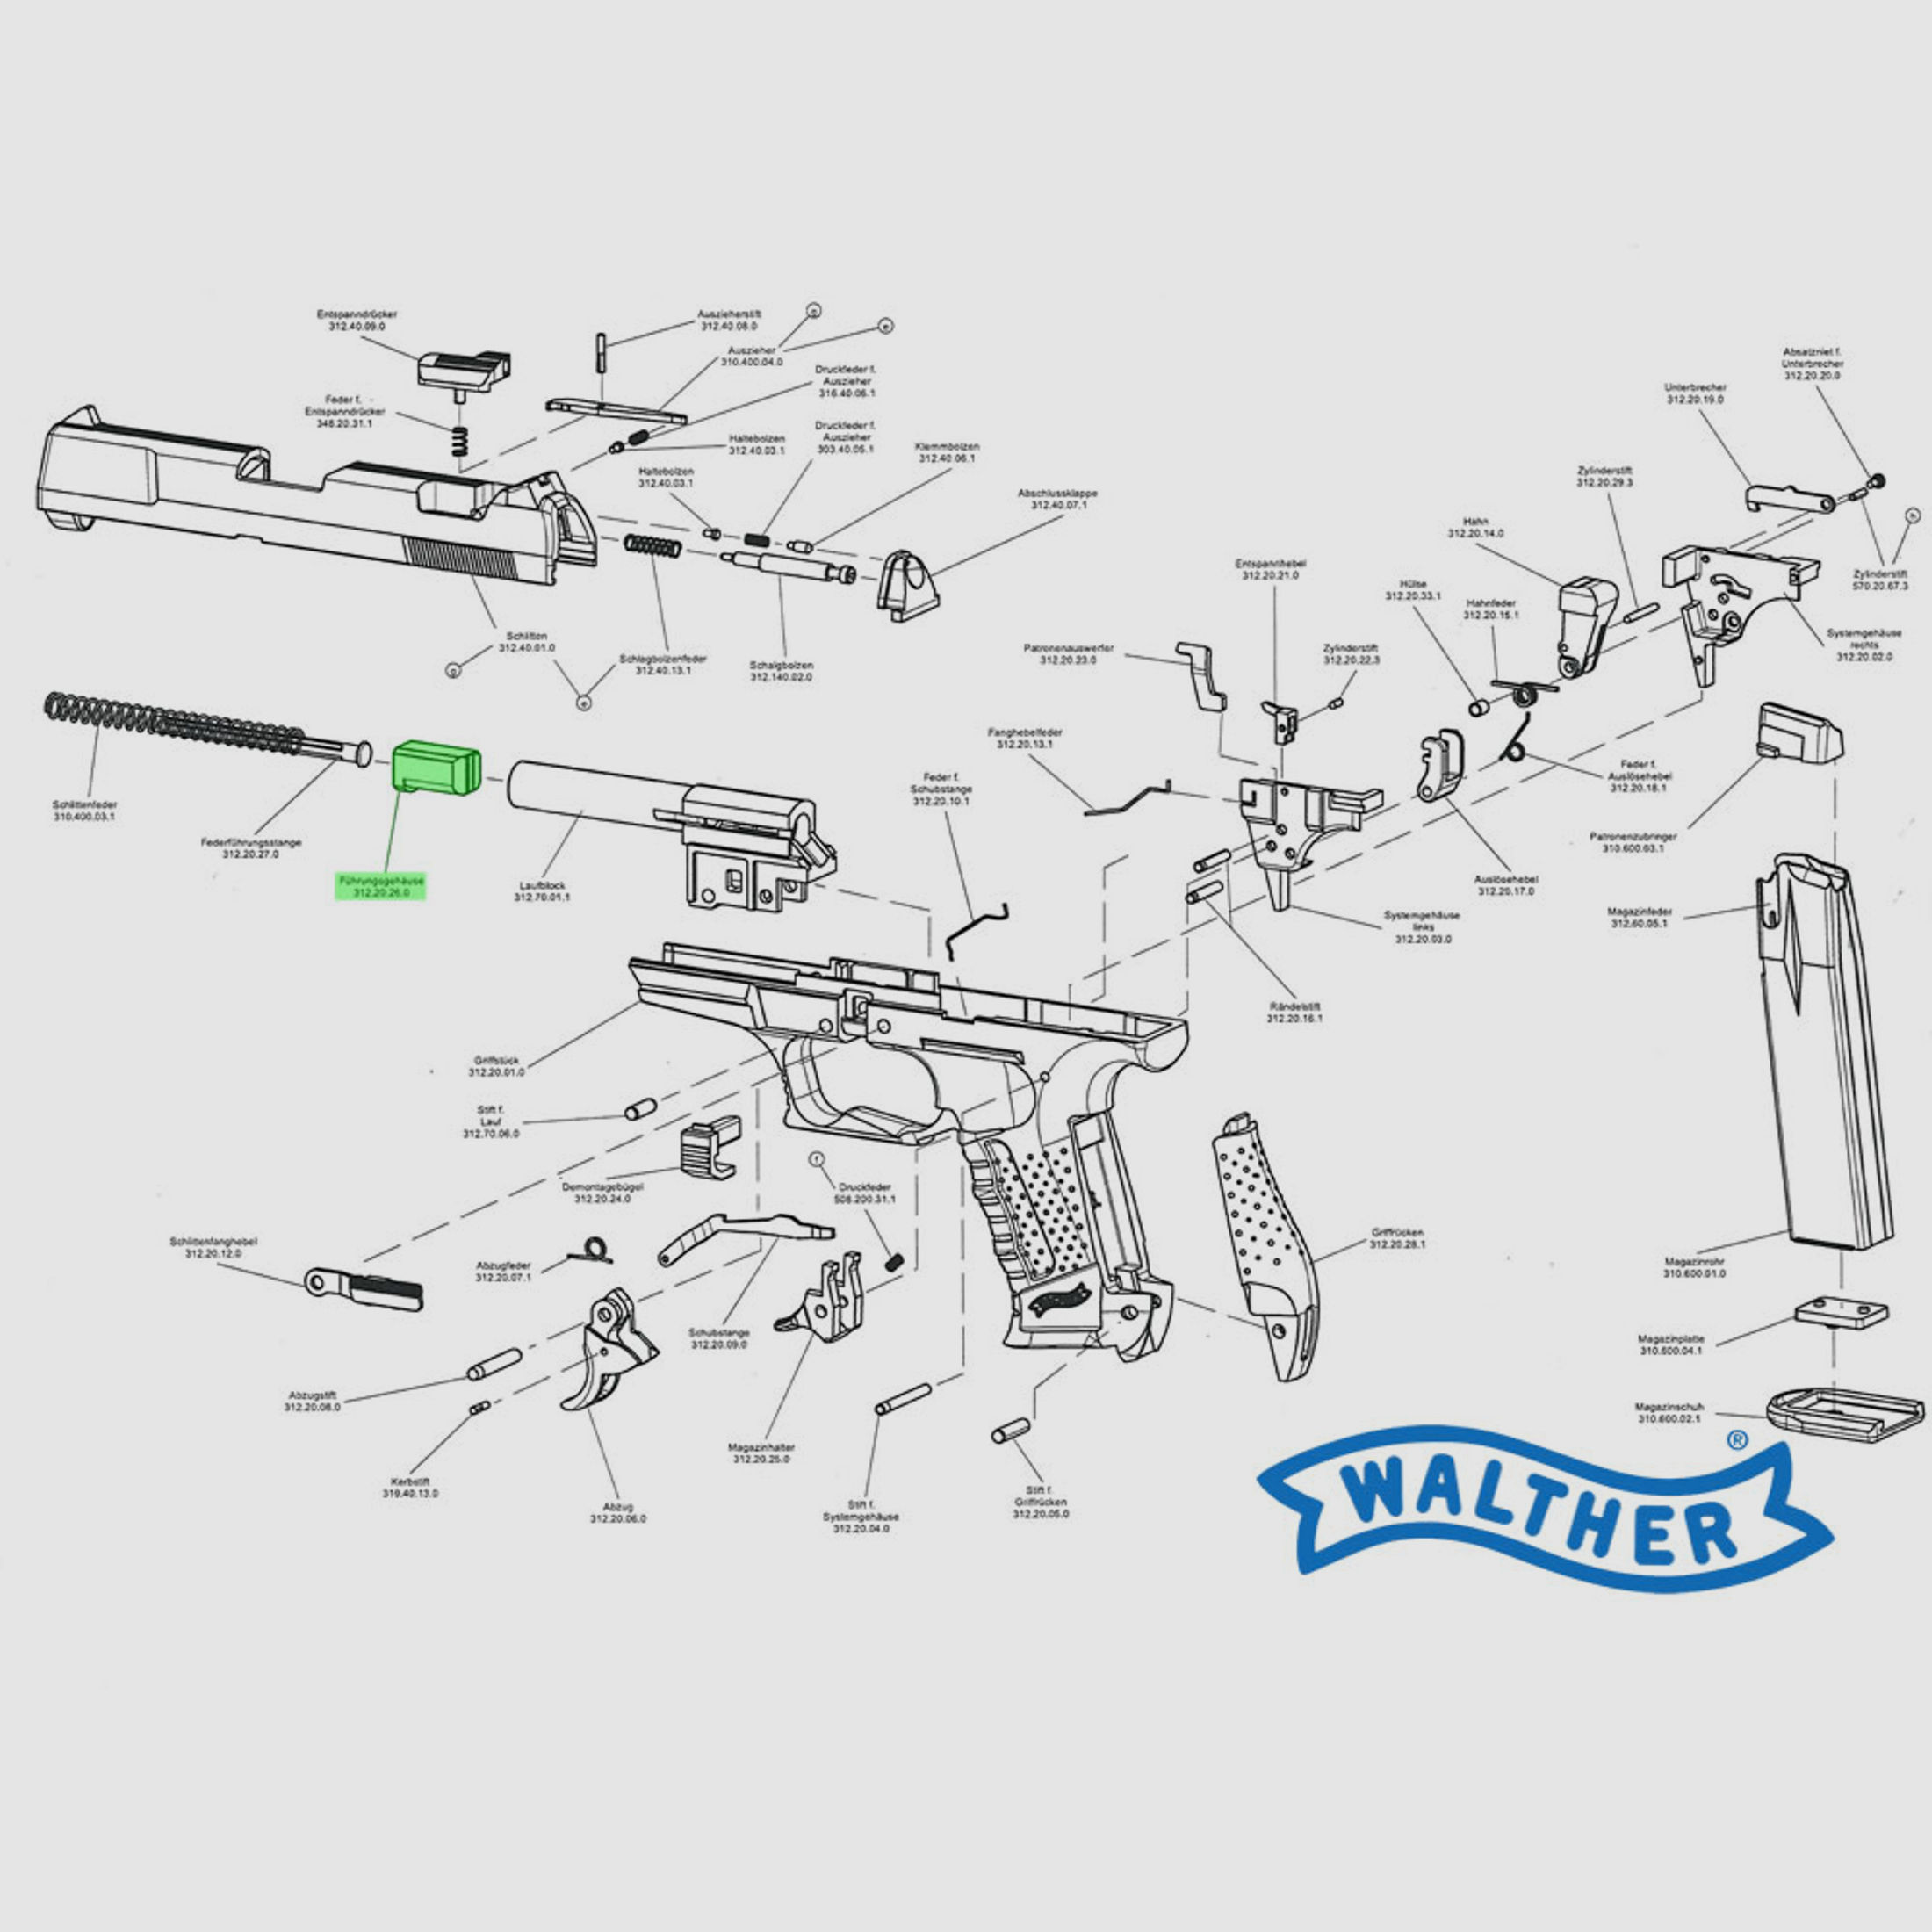 Halterung von SchlittenfederfĂĽhrungsstange (FĂĽhrungsgehĂ¤use) von Gas- Signalpistole Walther P99, Ersatzteil